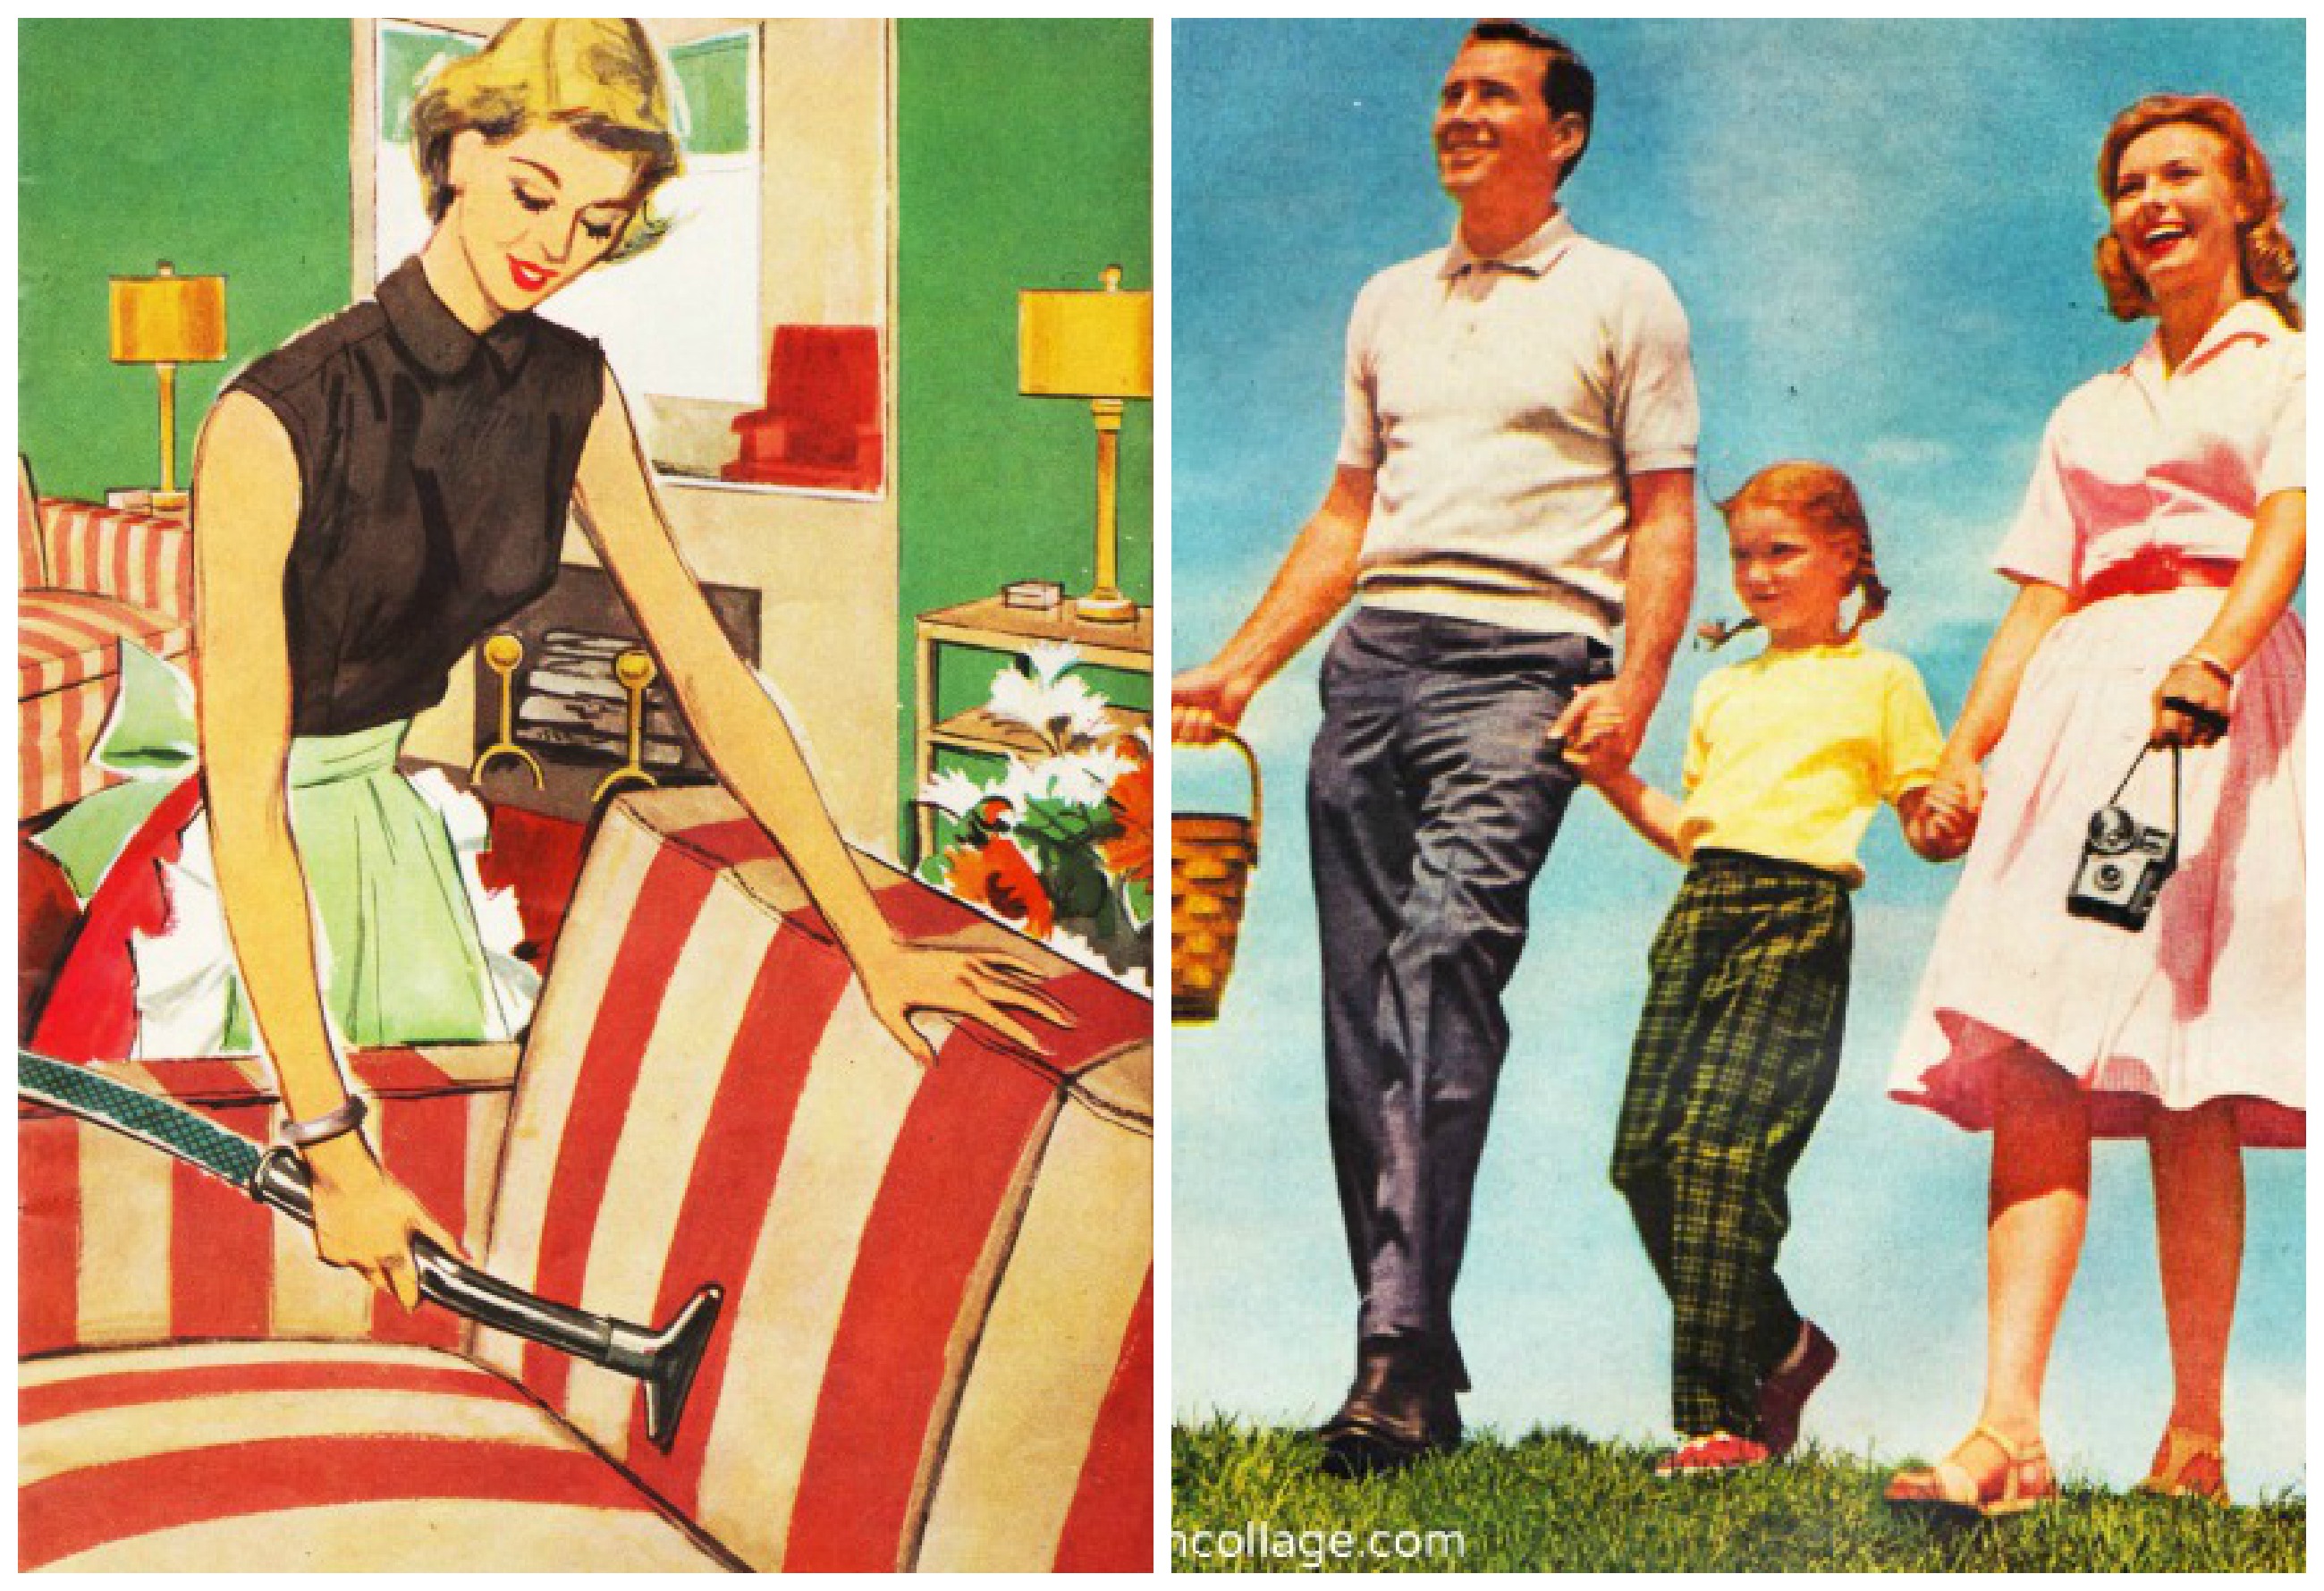 1950s american dream ads - Clip Art Library